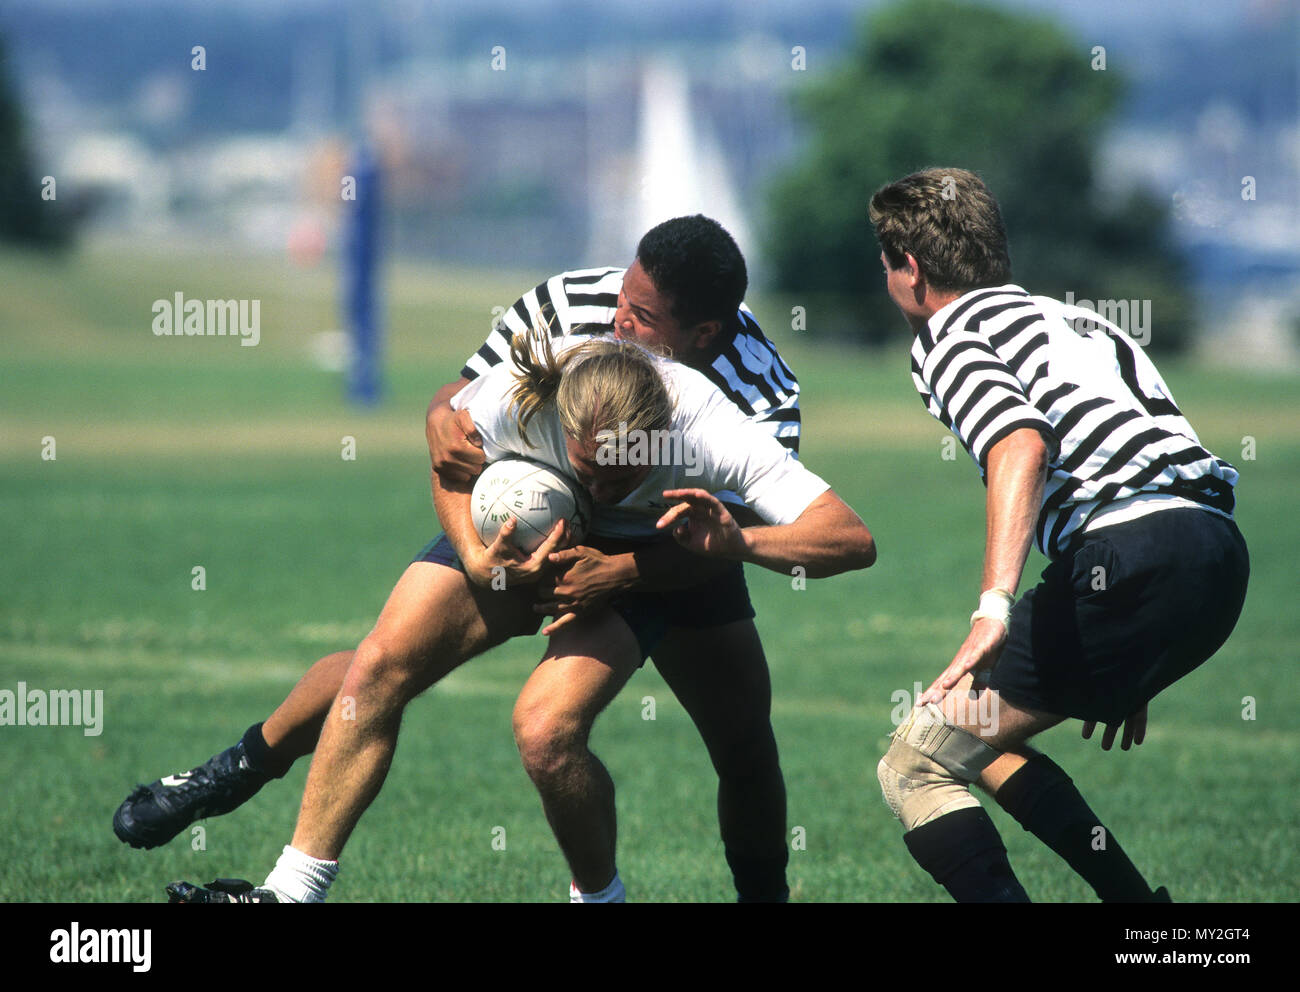 Un partido de rugby en curso en Newport, Rhode Island, EE.UU. Foto de stock